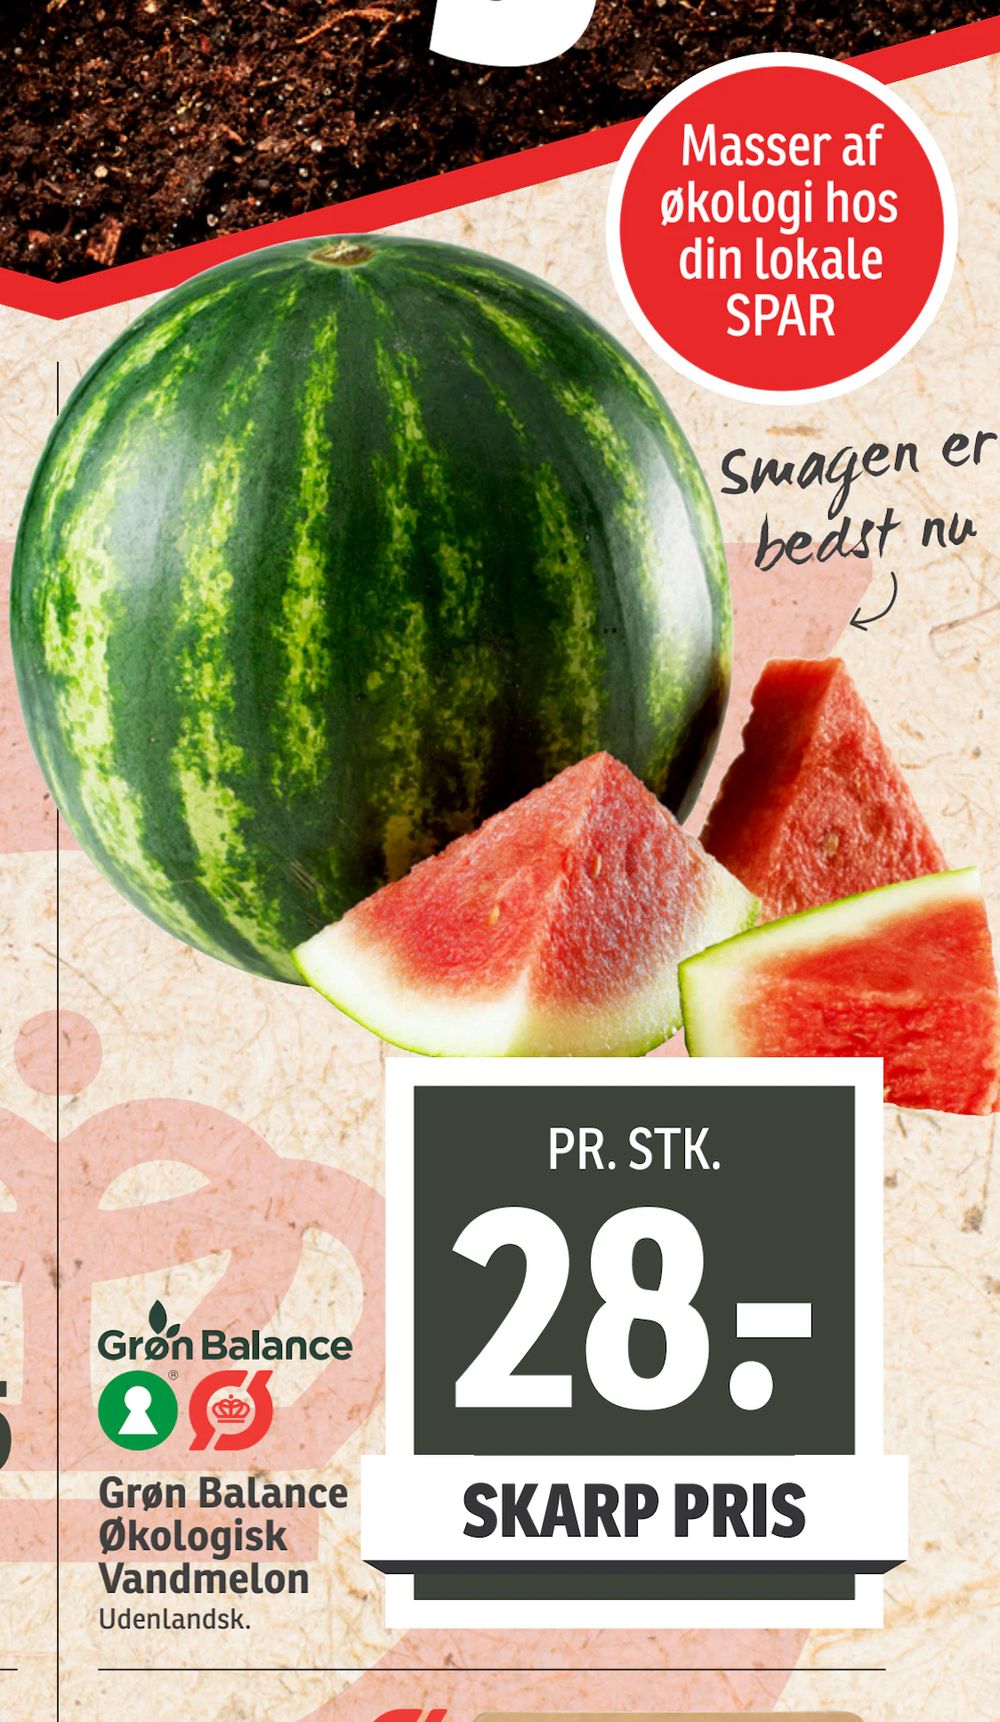 Tilbud på Grøn Balance Økologisk Vandmelon fra SPAR til 28 kr.